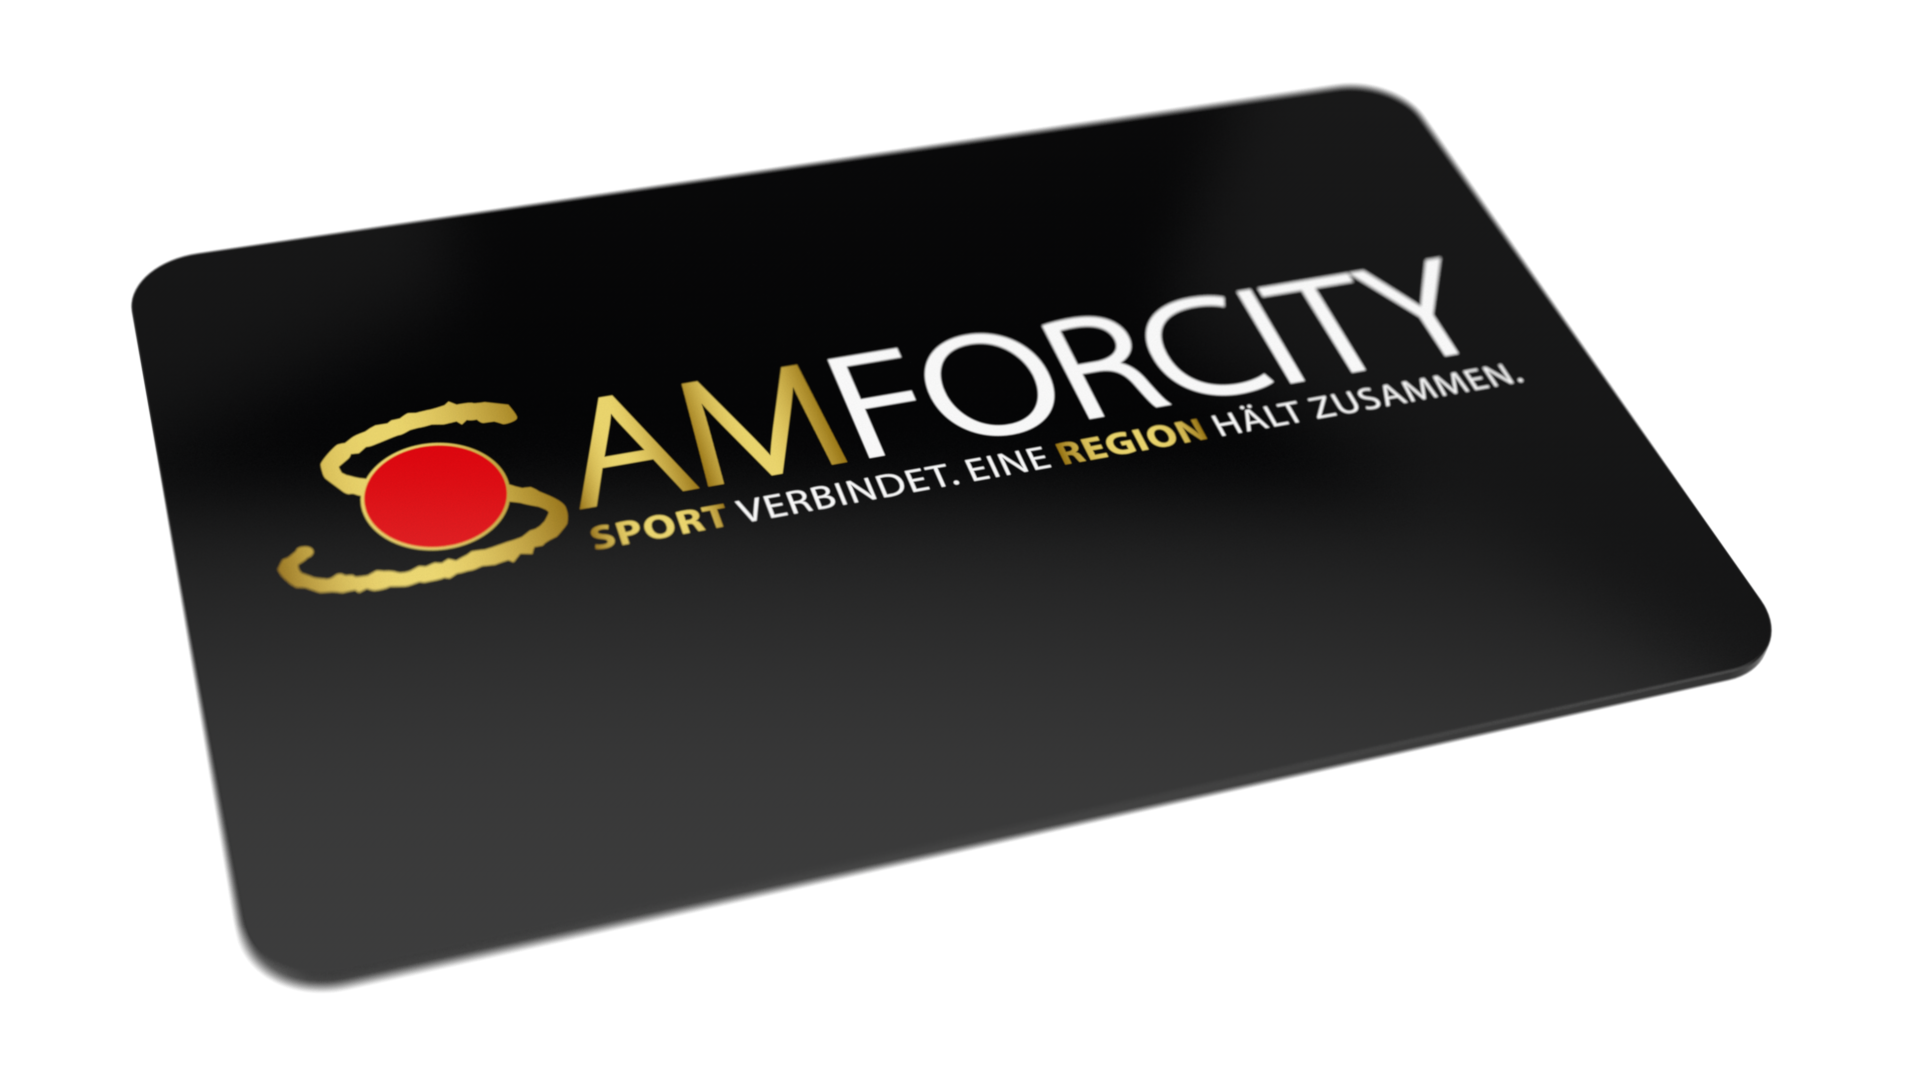 Bild der Samforcitycard für Börde